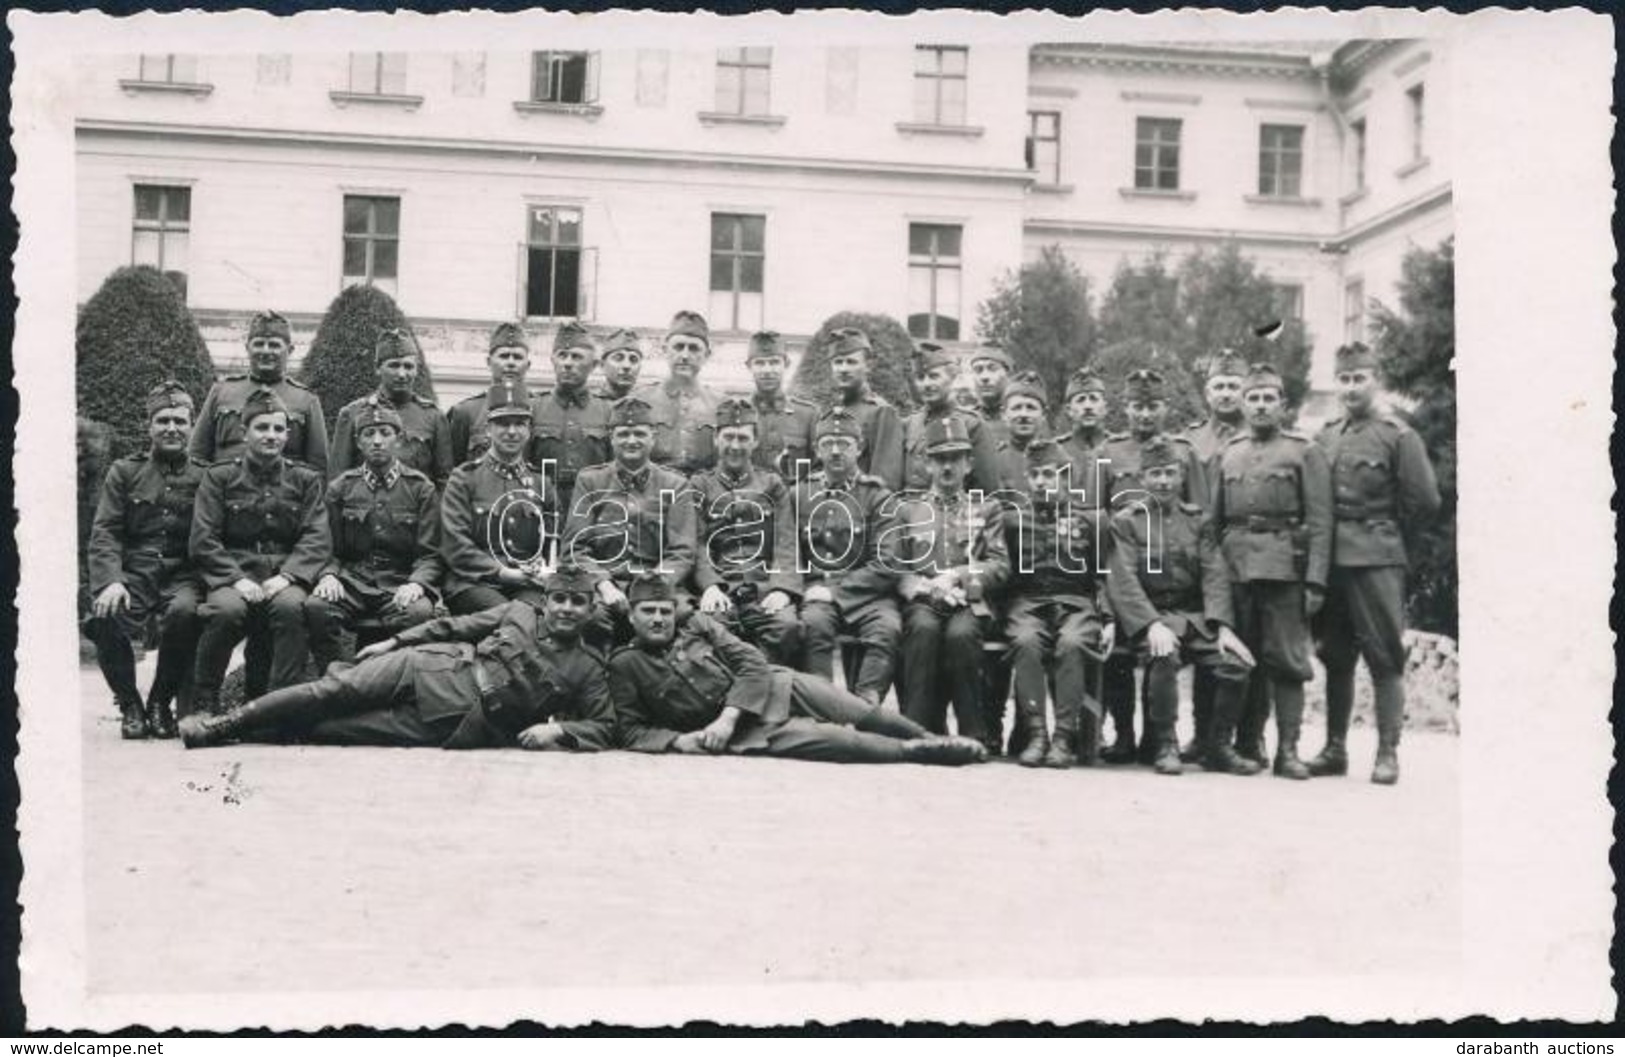 * 3 Db Második Világháborús Fotólap Zomborból / 3 WWII Military Photo Postcards From Sombor - Sin Clasificación